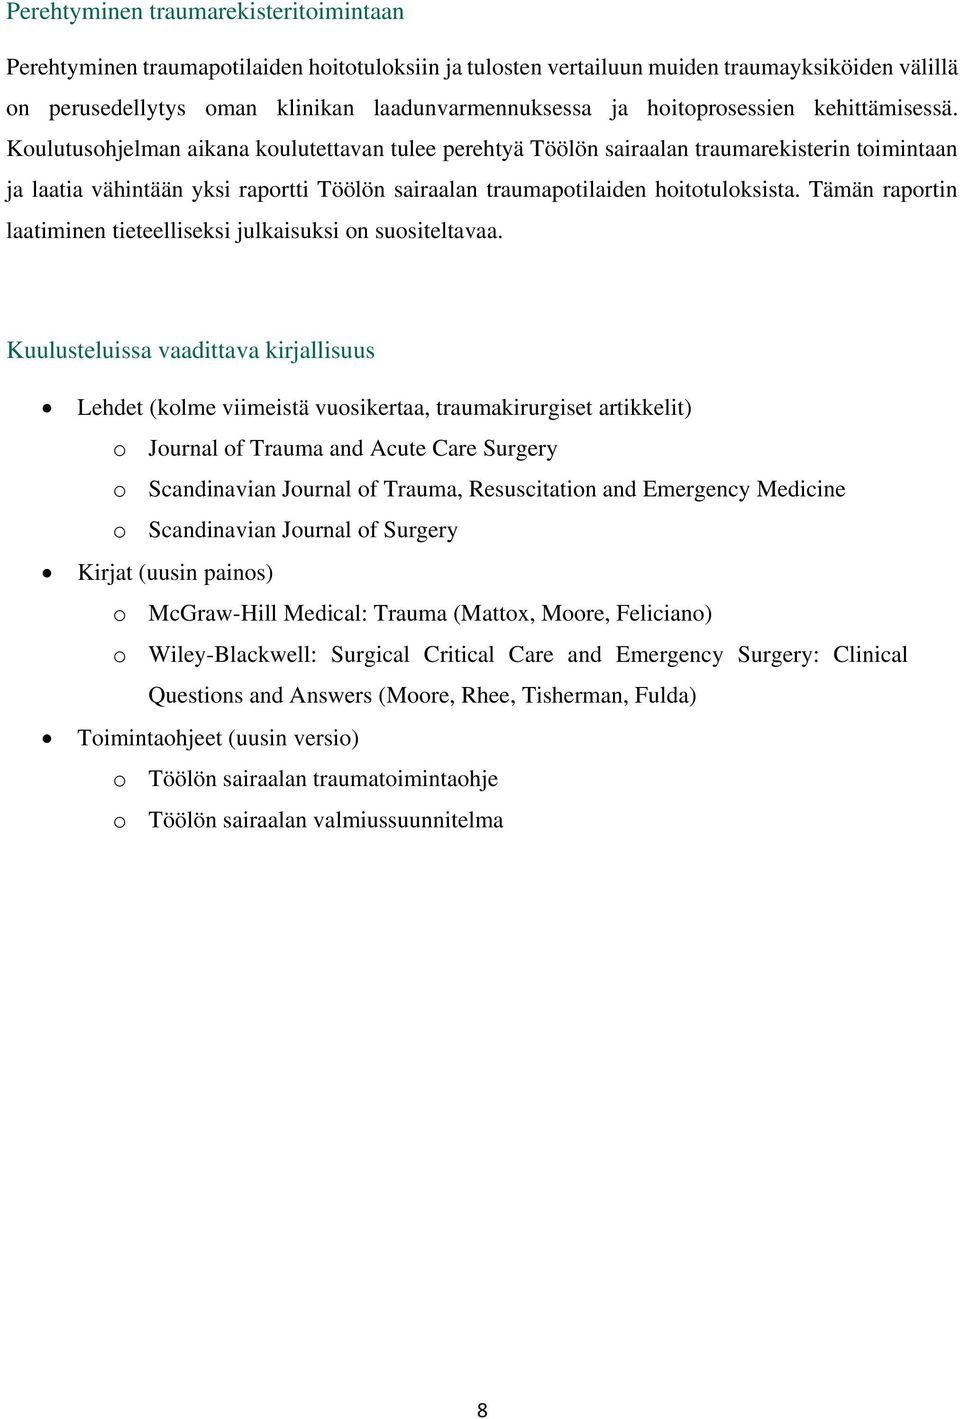 Koulutusohjelman aikana koulutettavan tulee perehtyä Töölön sairaalan traumarekisterin toimintaan ja laatia vähintään yksi raportti Töölön sairaalan traumapotilaiden hoitotuloksista.